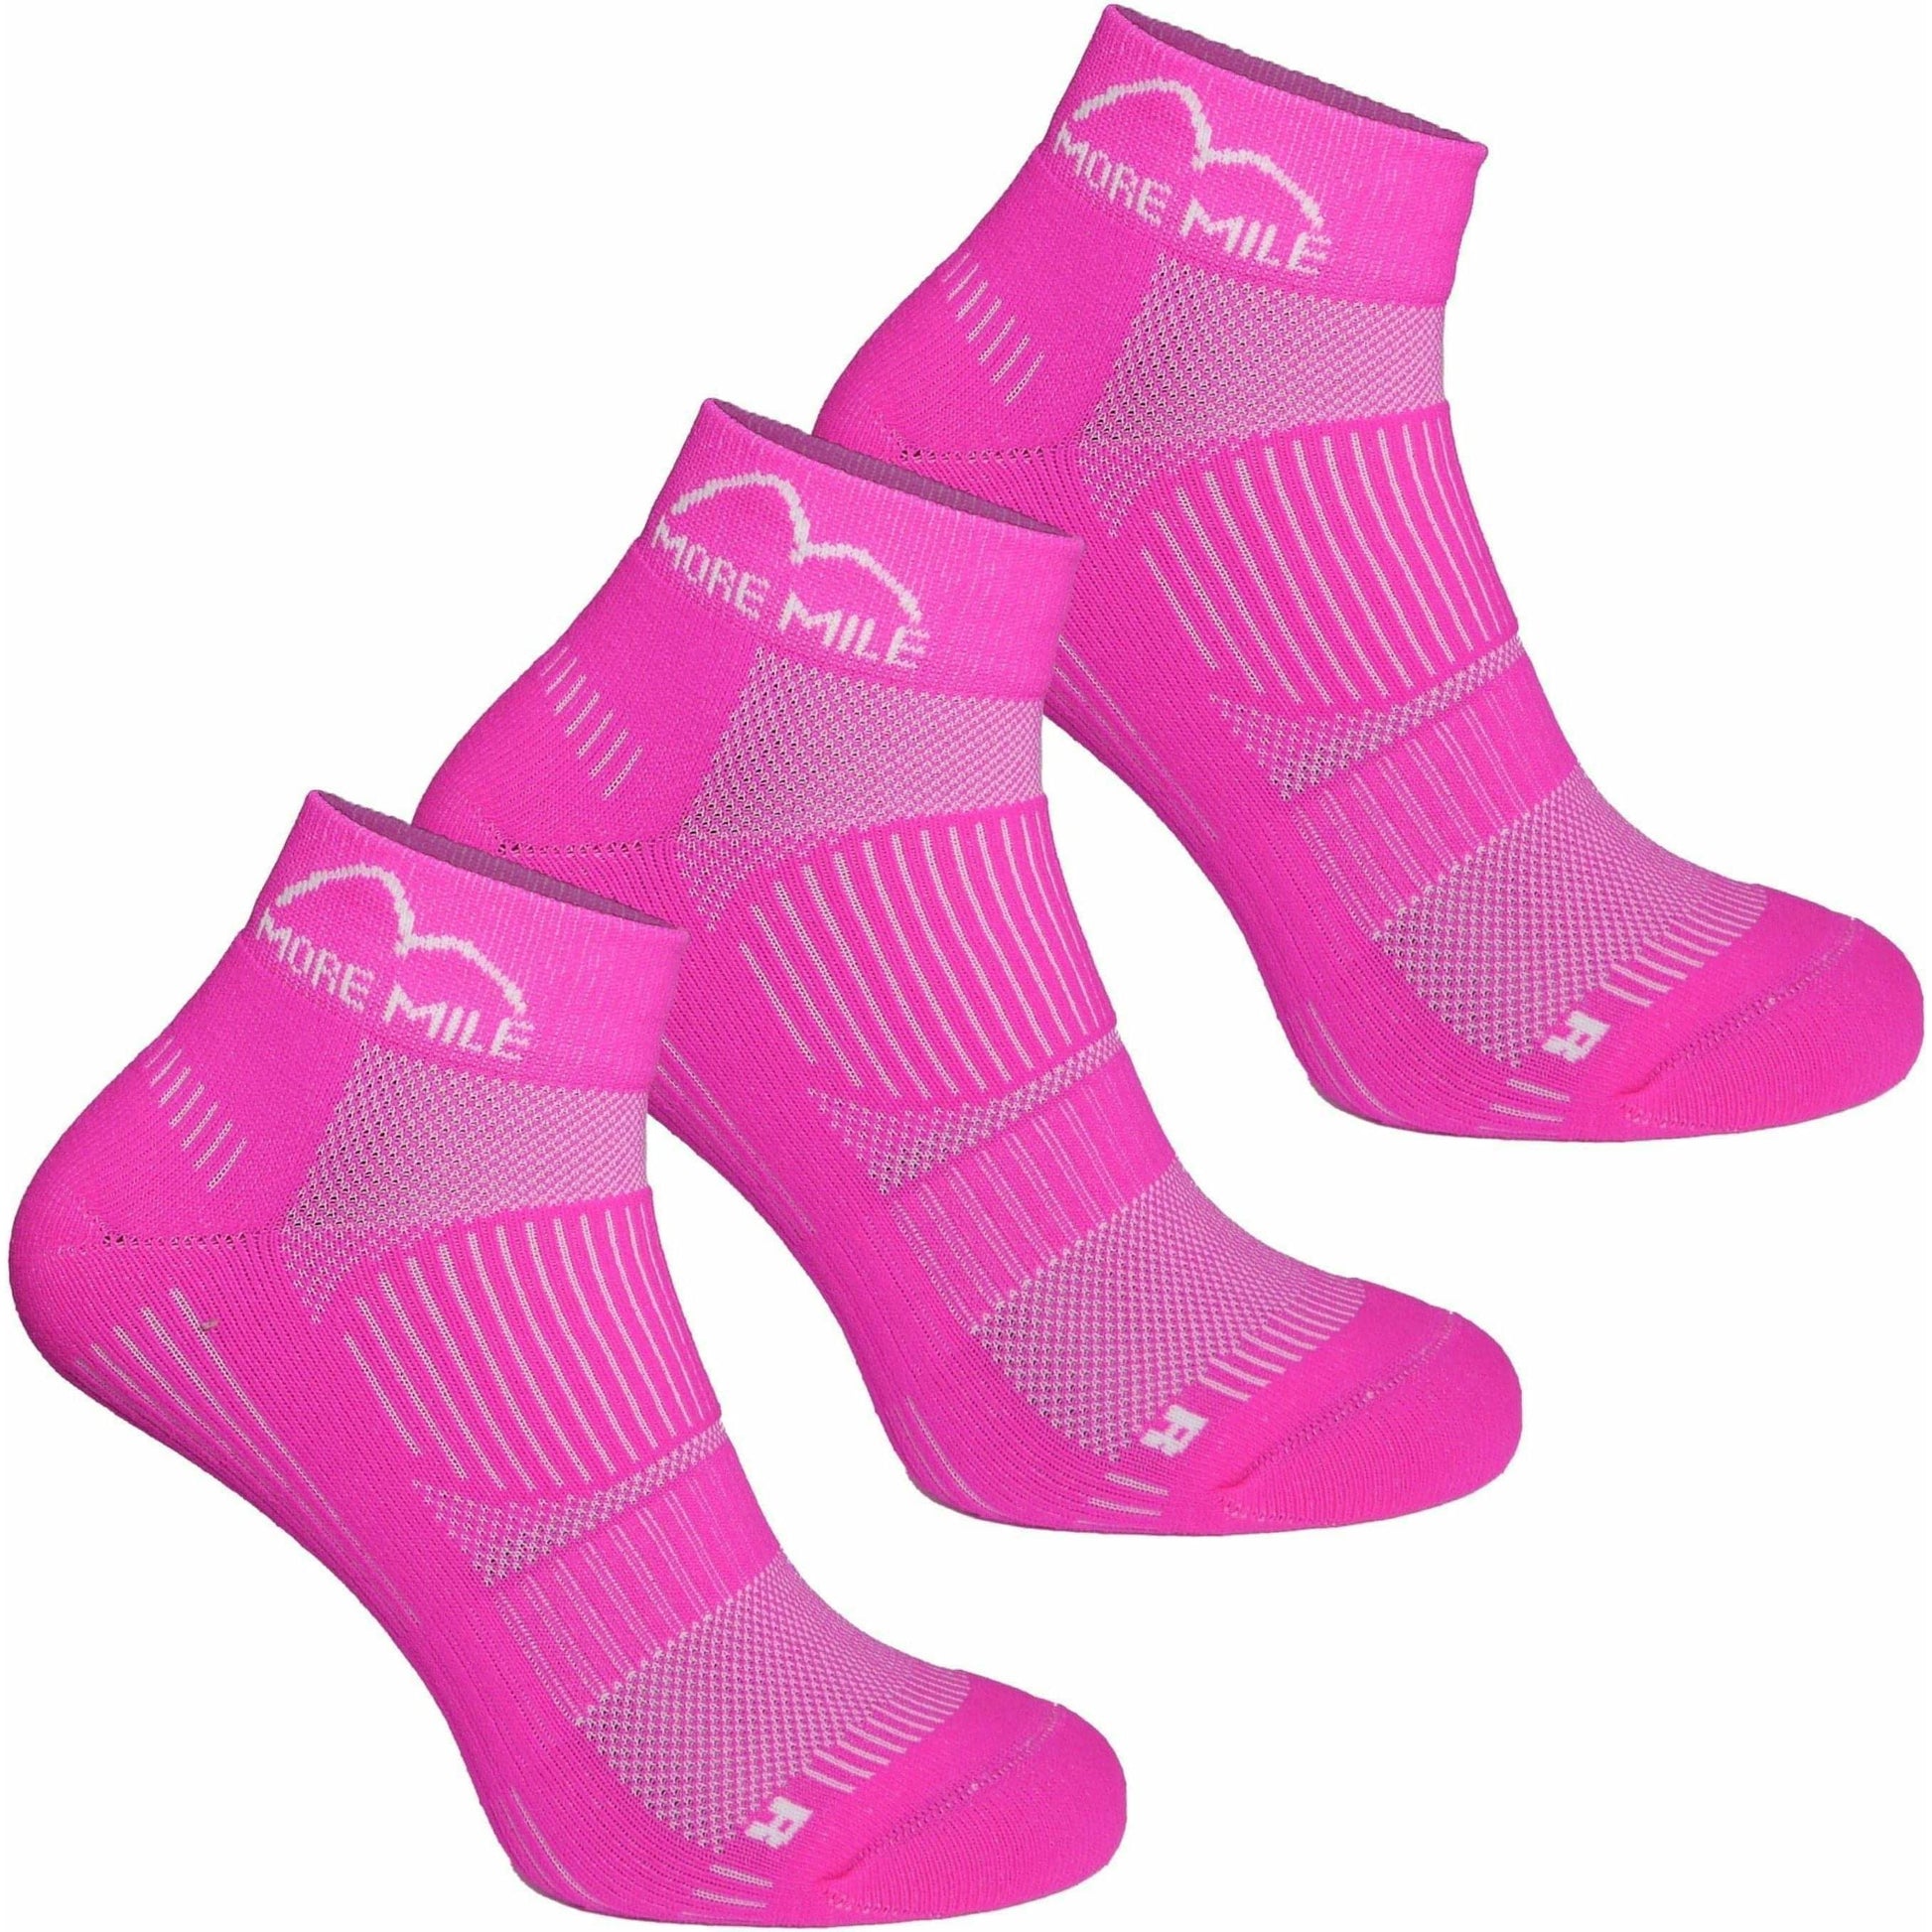 More Mile London 2.0 (3 Pack) Running Socks - Pink - Start Fitness